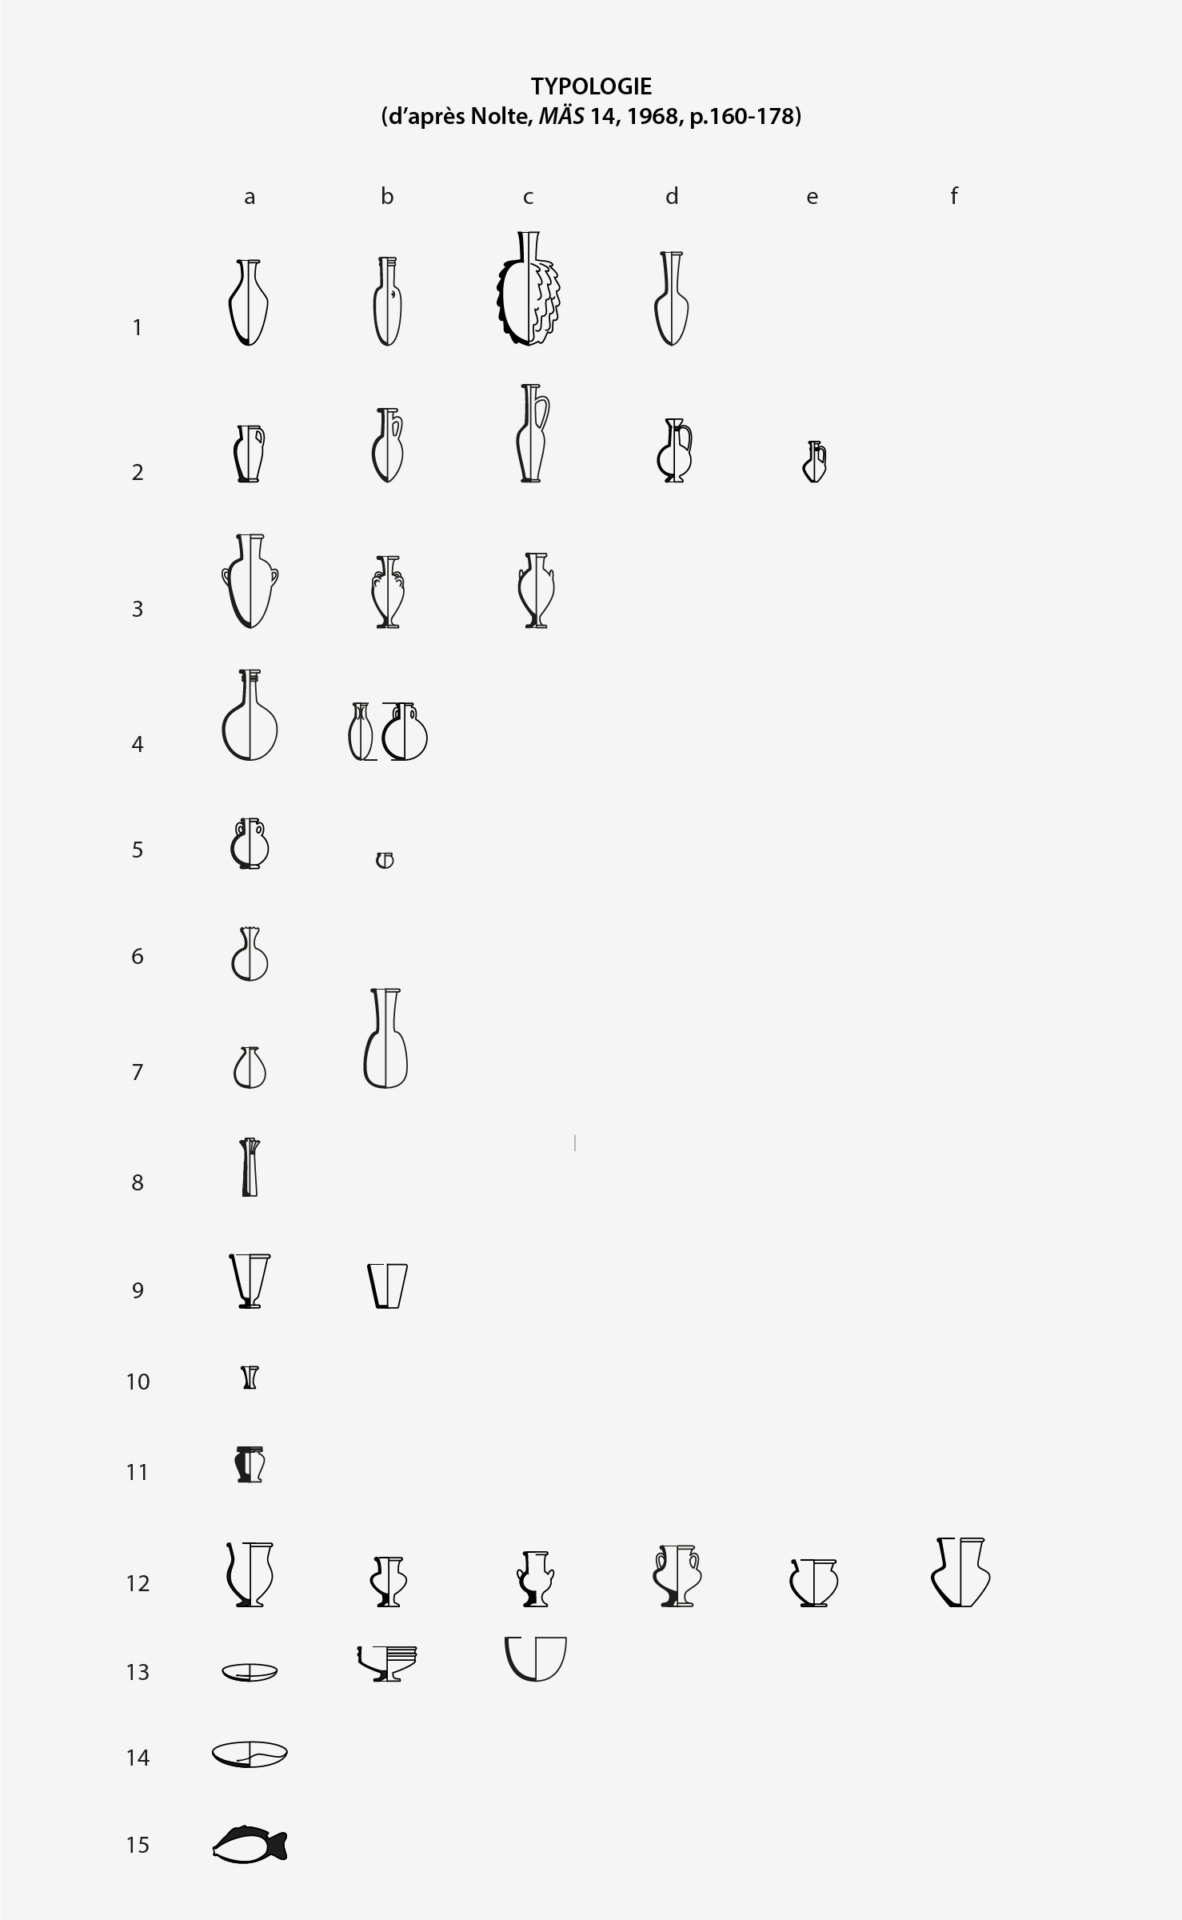 Principales formes de verreries en usage dans l'Égypte antique, typologie d'après Nolte